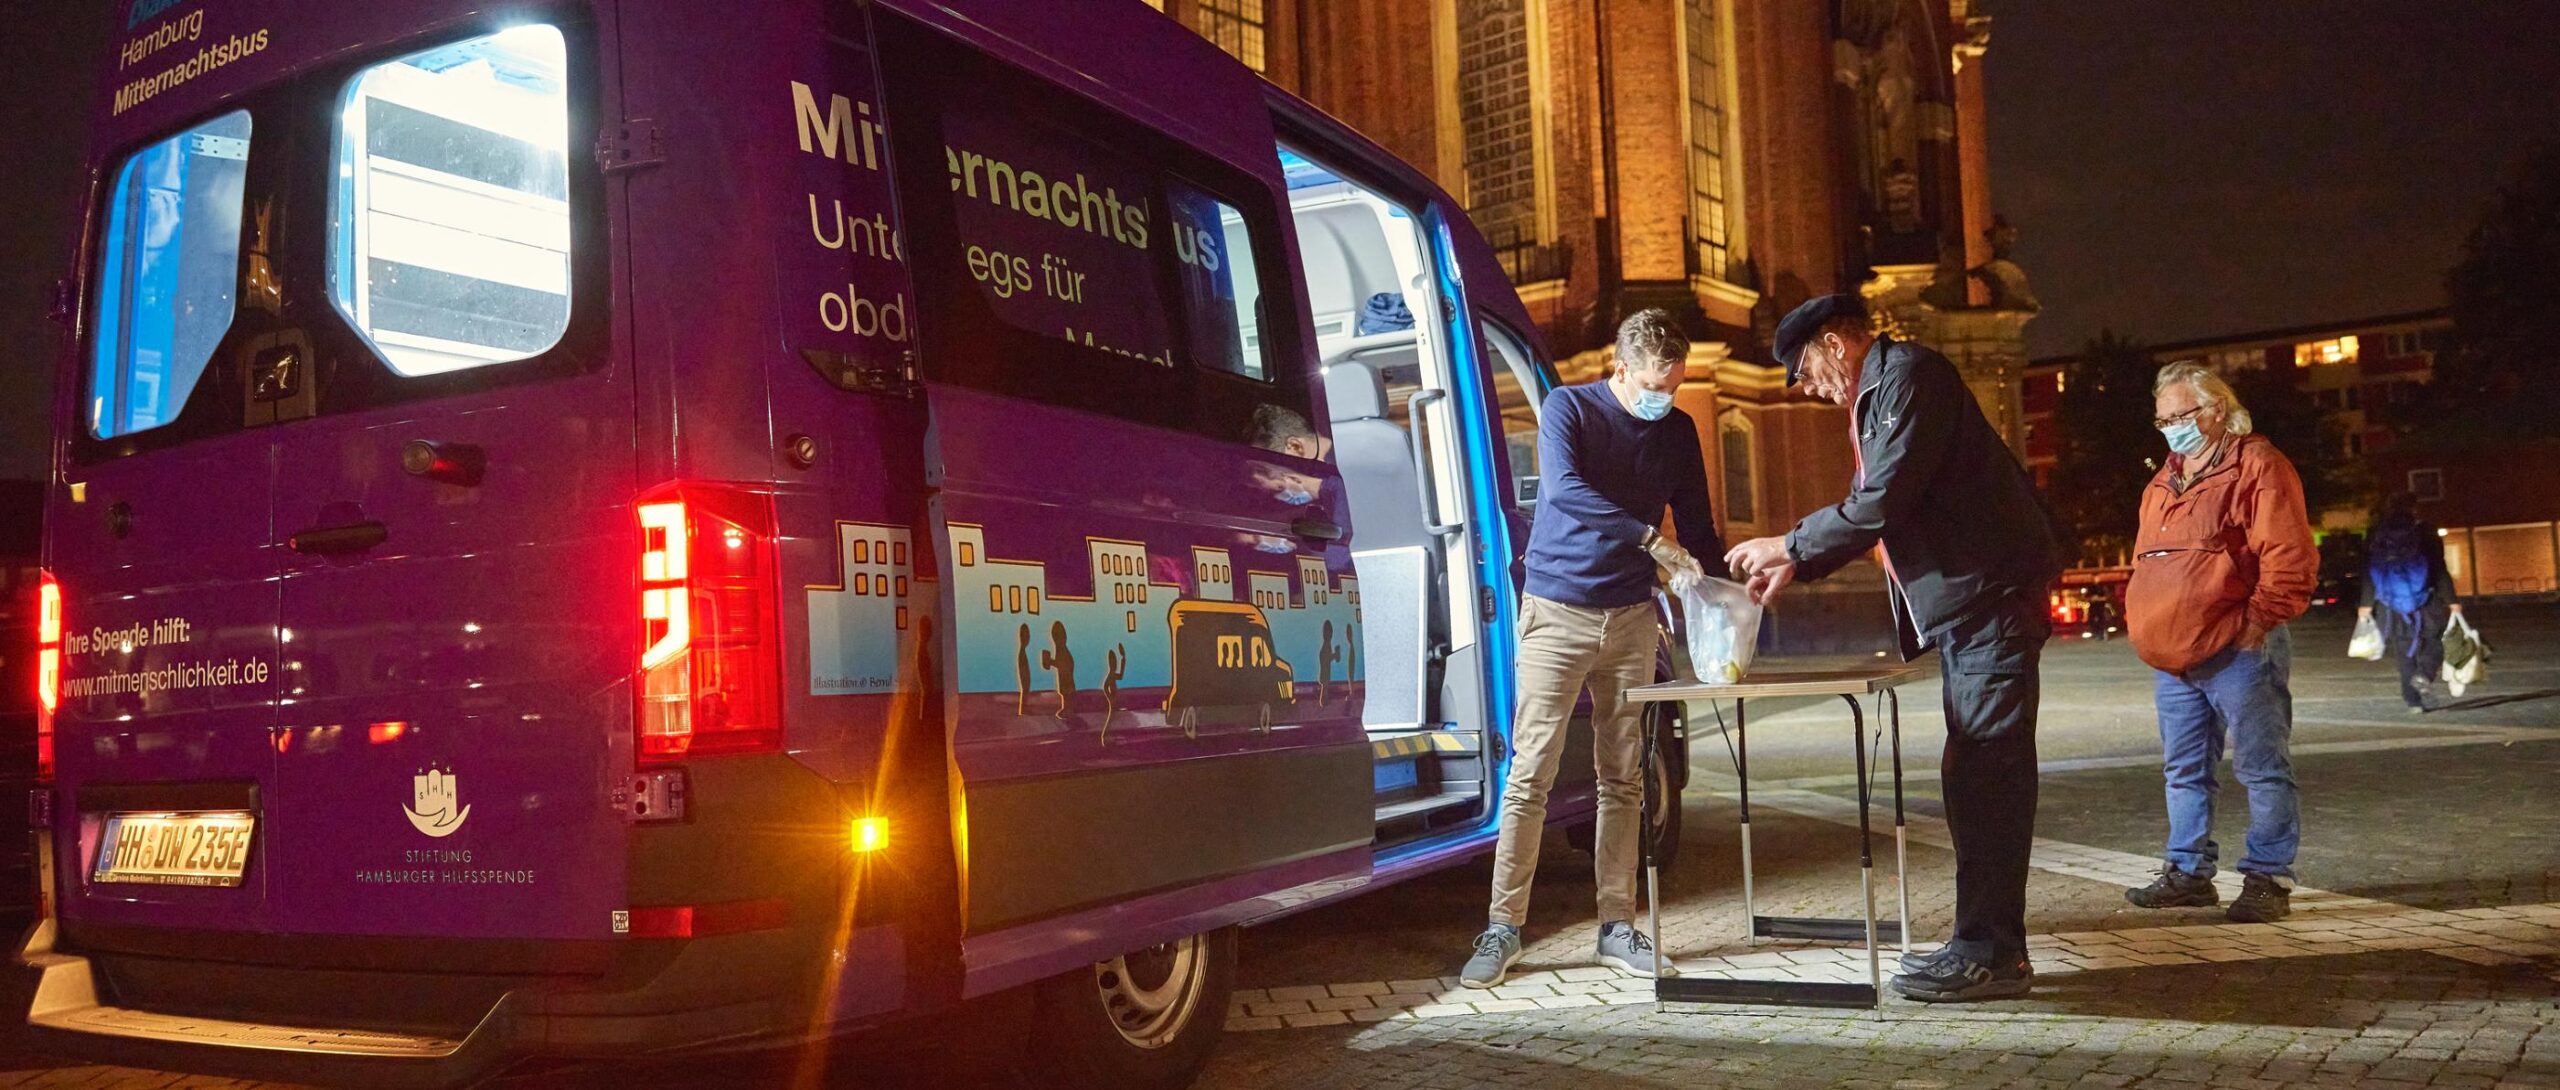 Mitternachtsbus-Tour-02-Diakonie-Hamburg.jpg_1895414505